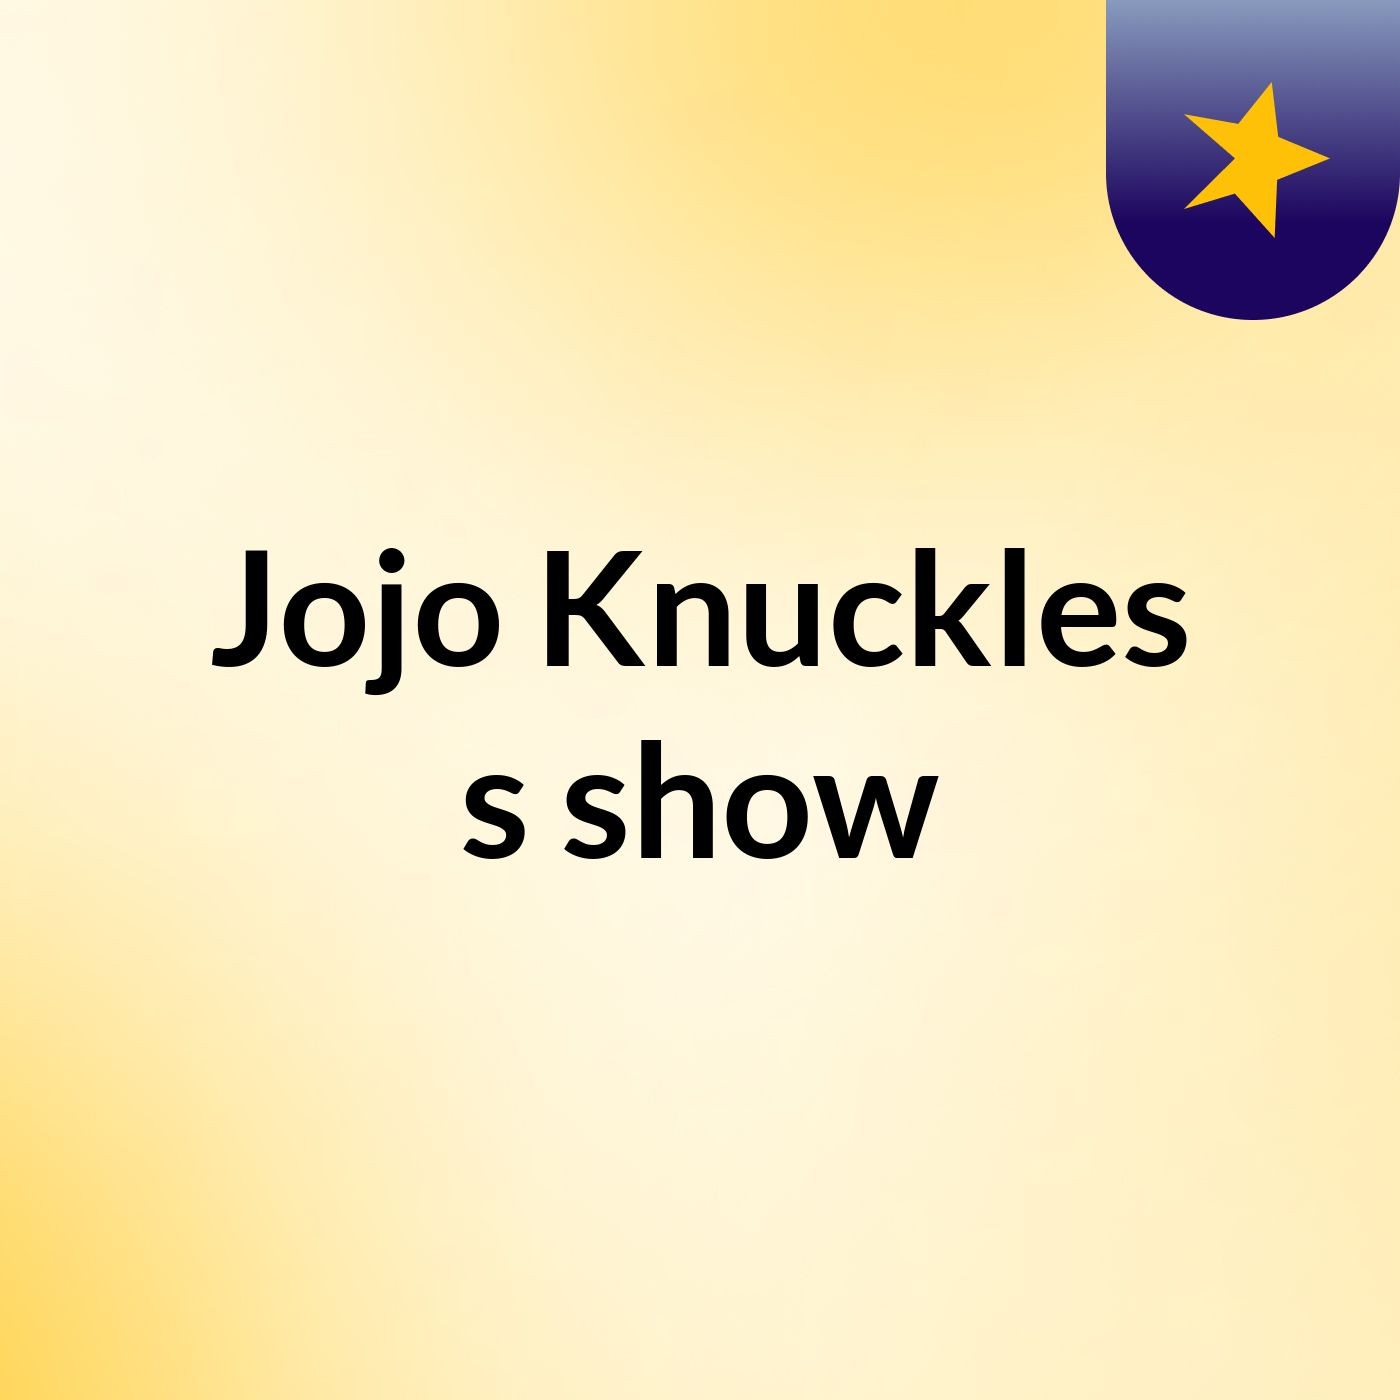 Jojo Knuckles's show